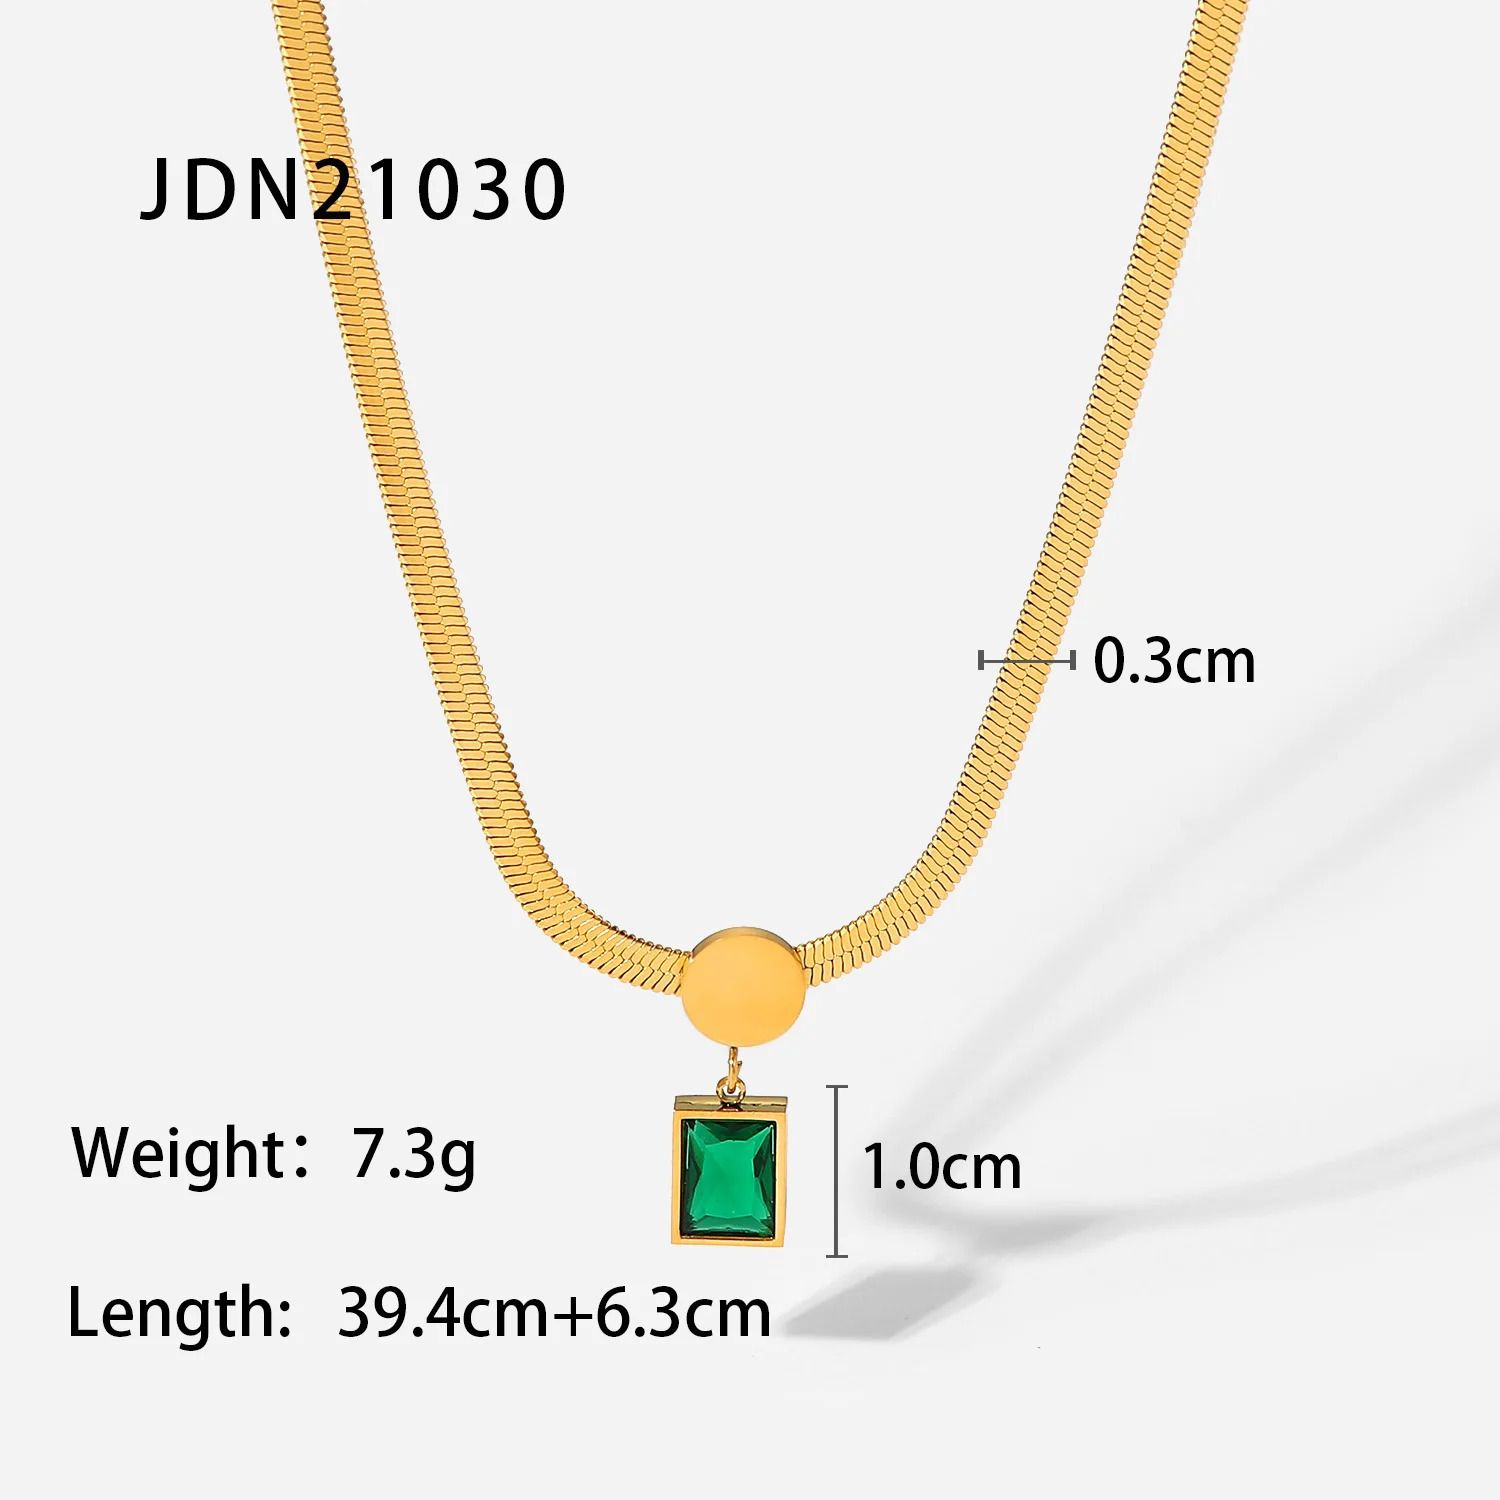 JDN21030